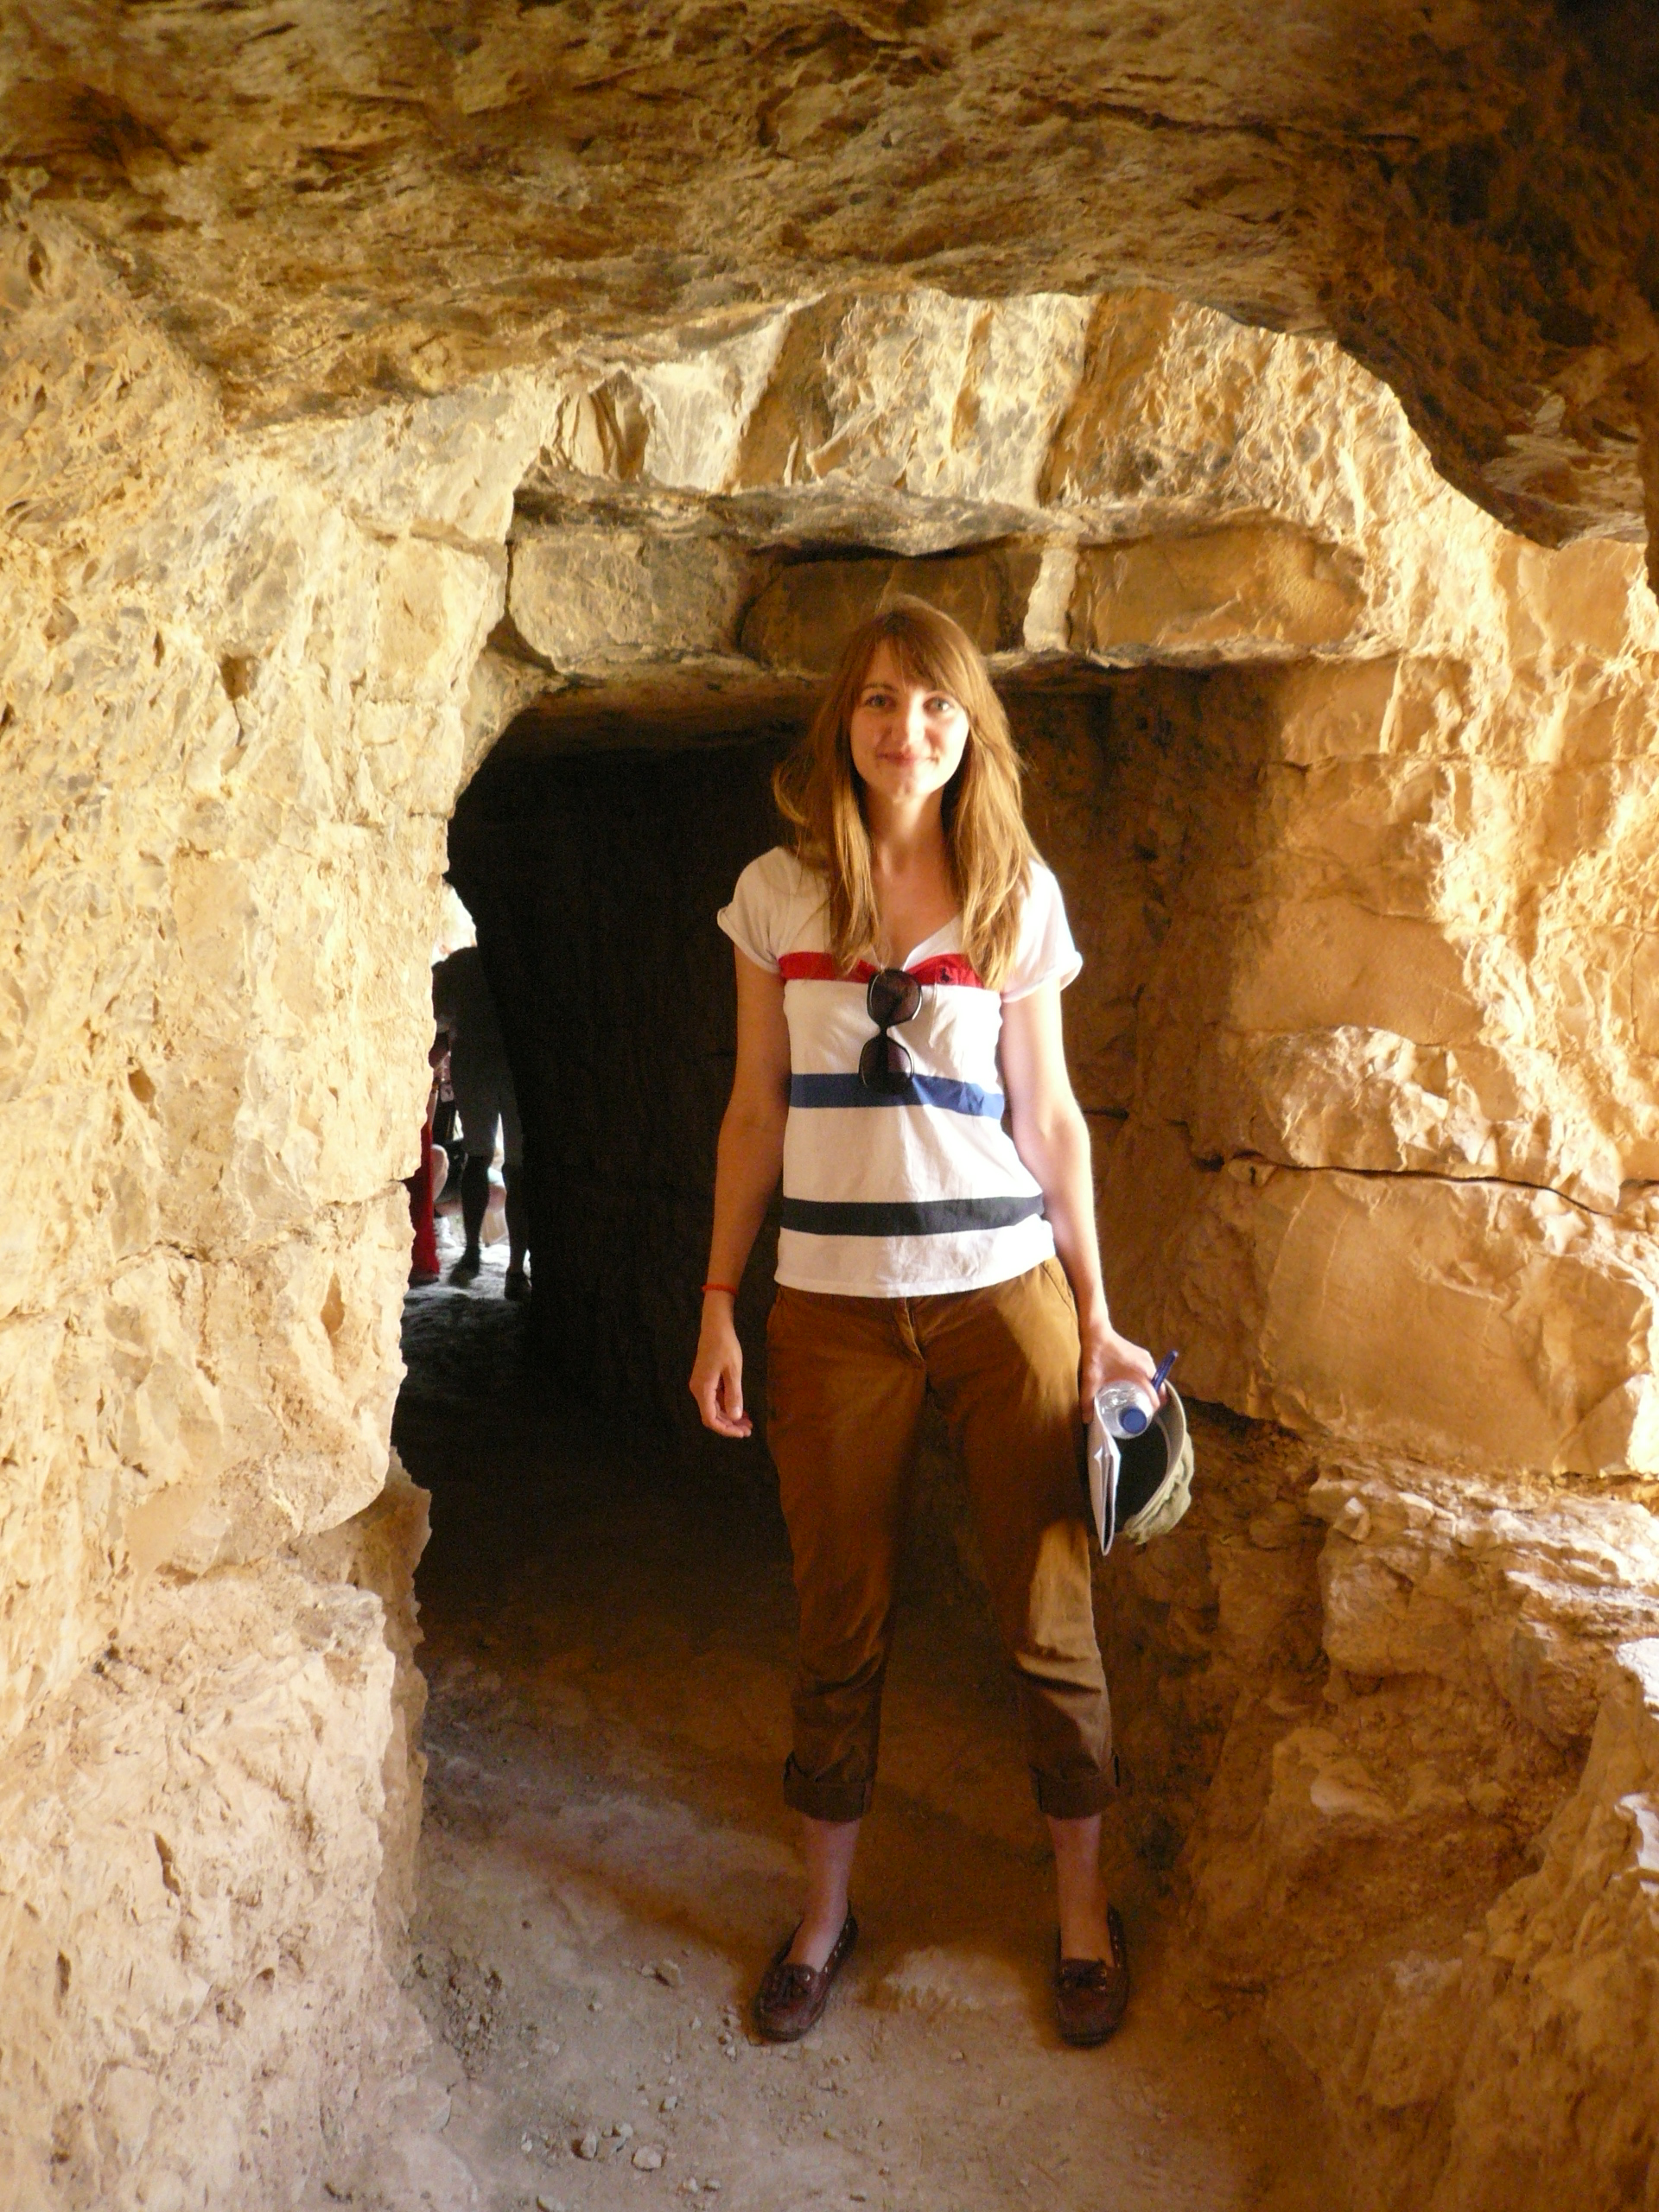 Inside the Albarracin-Cella aqueduct